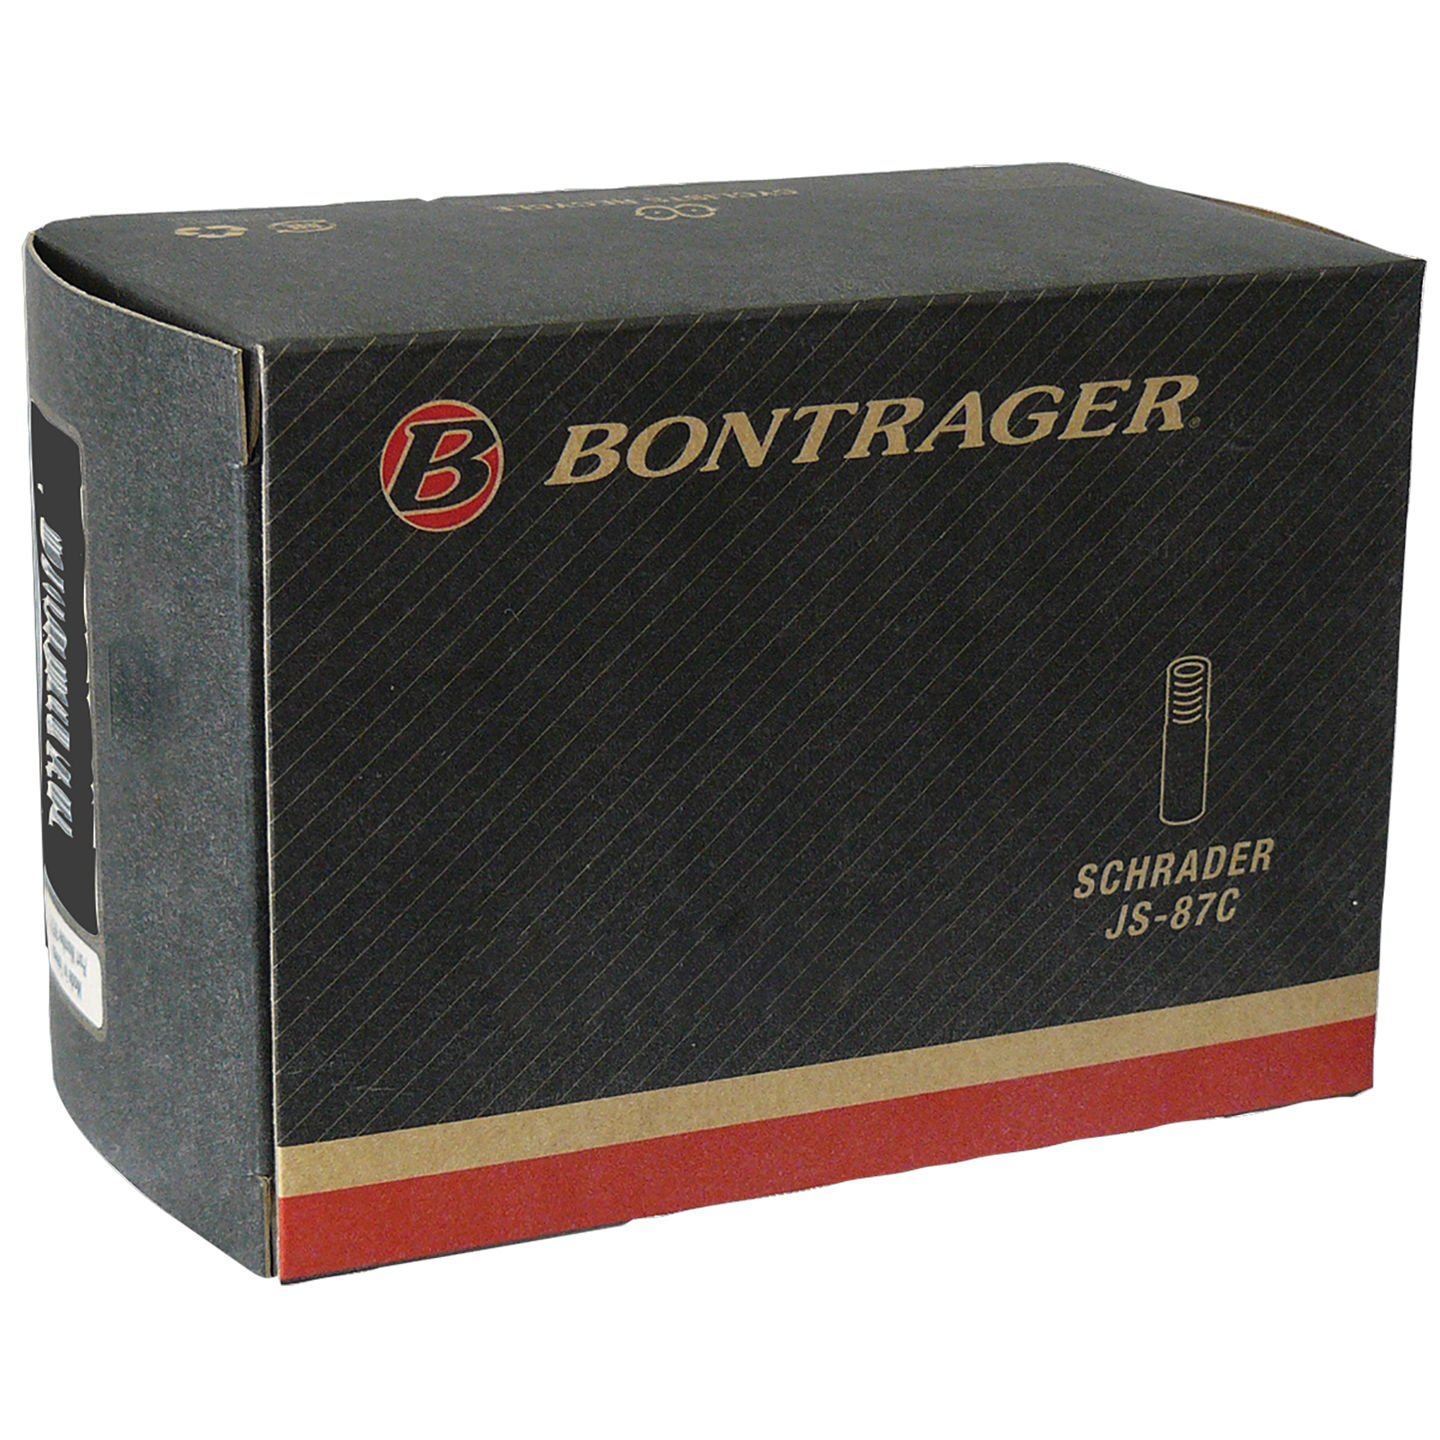 Камера велосипедная Bontrager Standard, 26x1.25-1.75, Presta 36mm, TCG-88449 камера велосипедная bontrager standard 700x28 32c 27 x1 1 8 1 1 4 presta 48mm tcg 64789